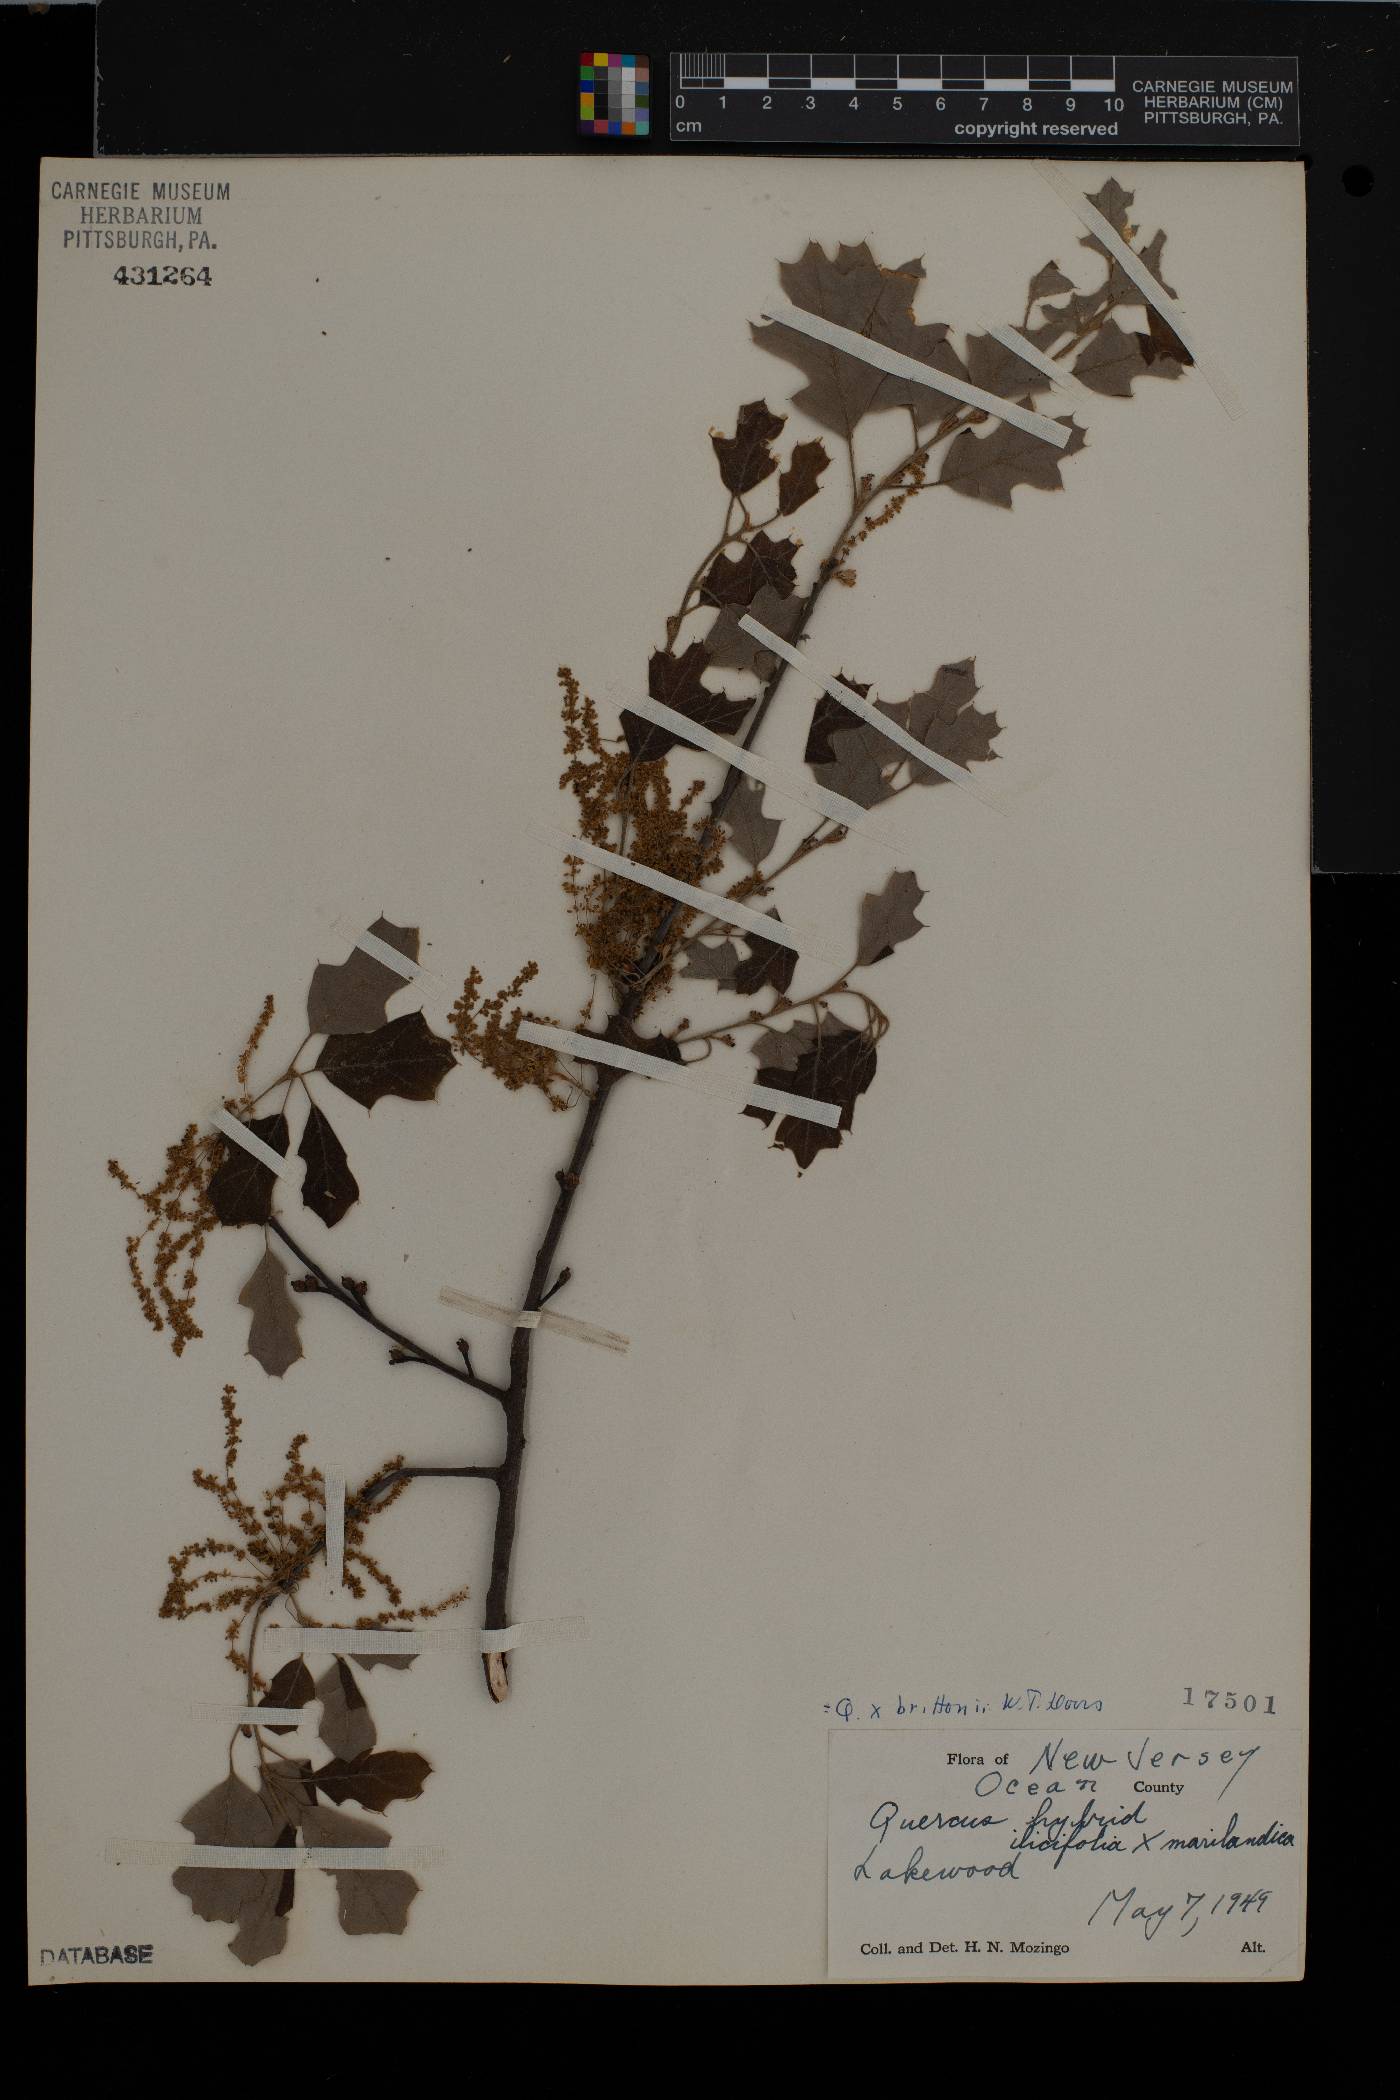 Quercus brittonii image